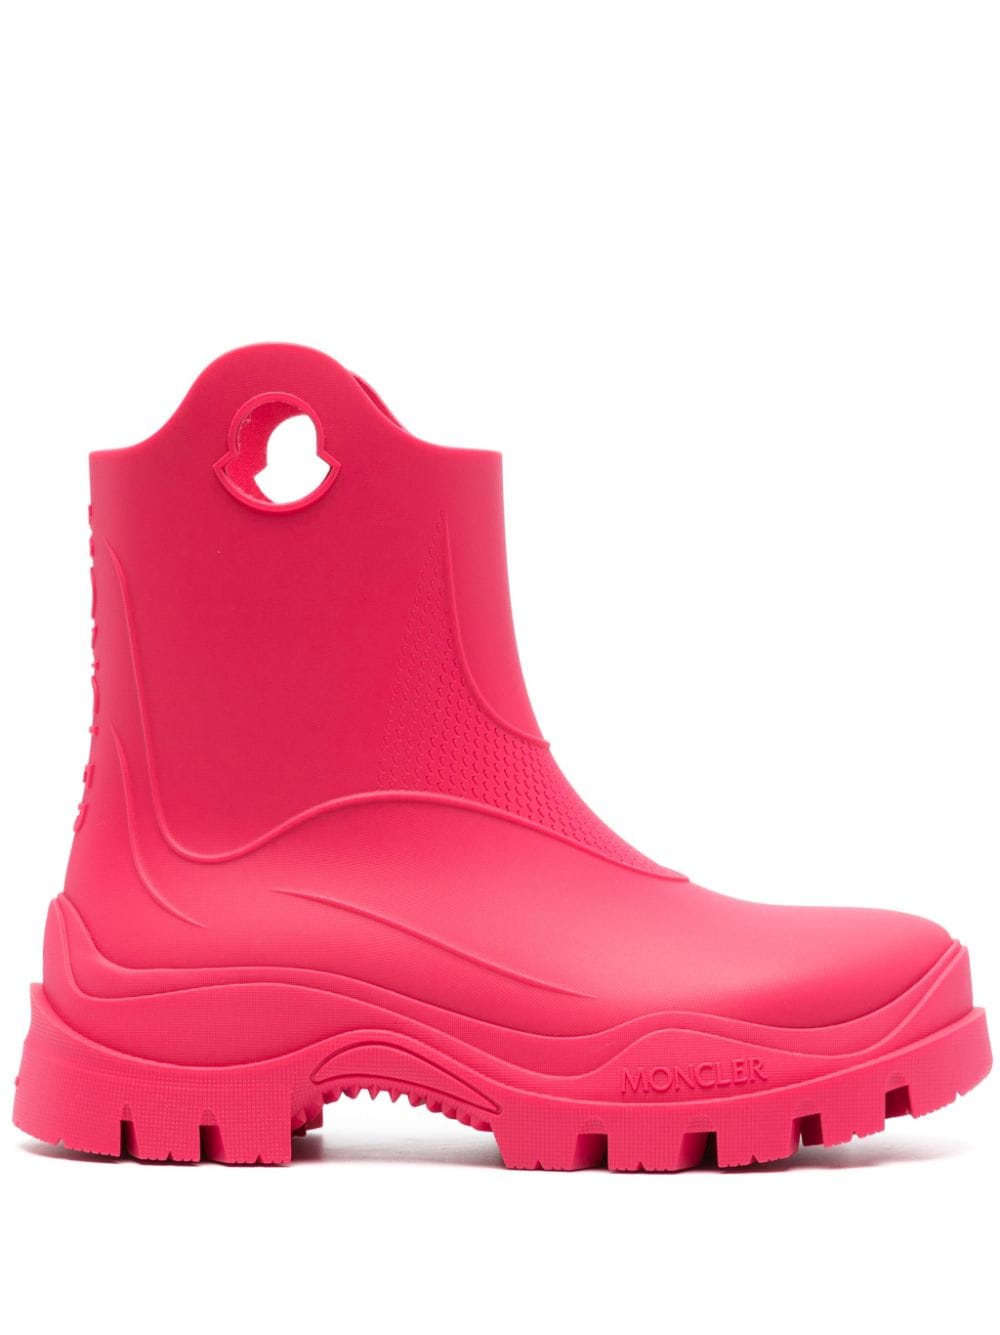 Moncler Misty rain boots - Pink von Moncler